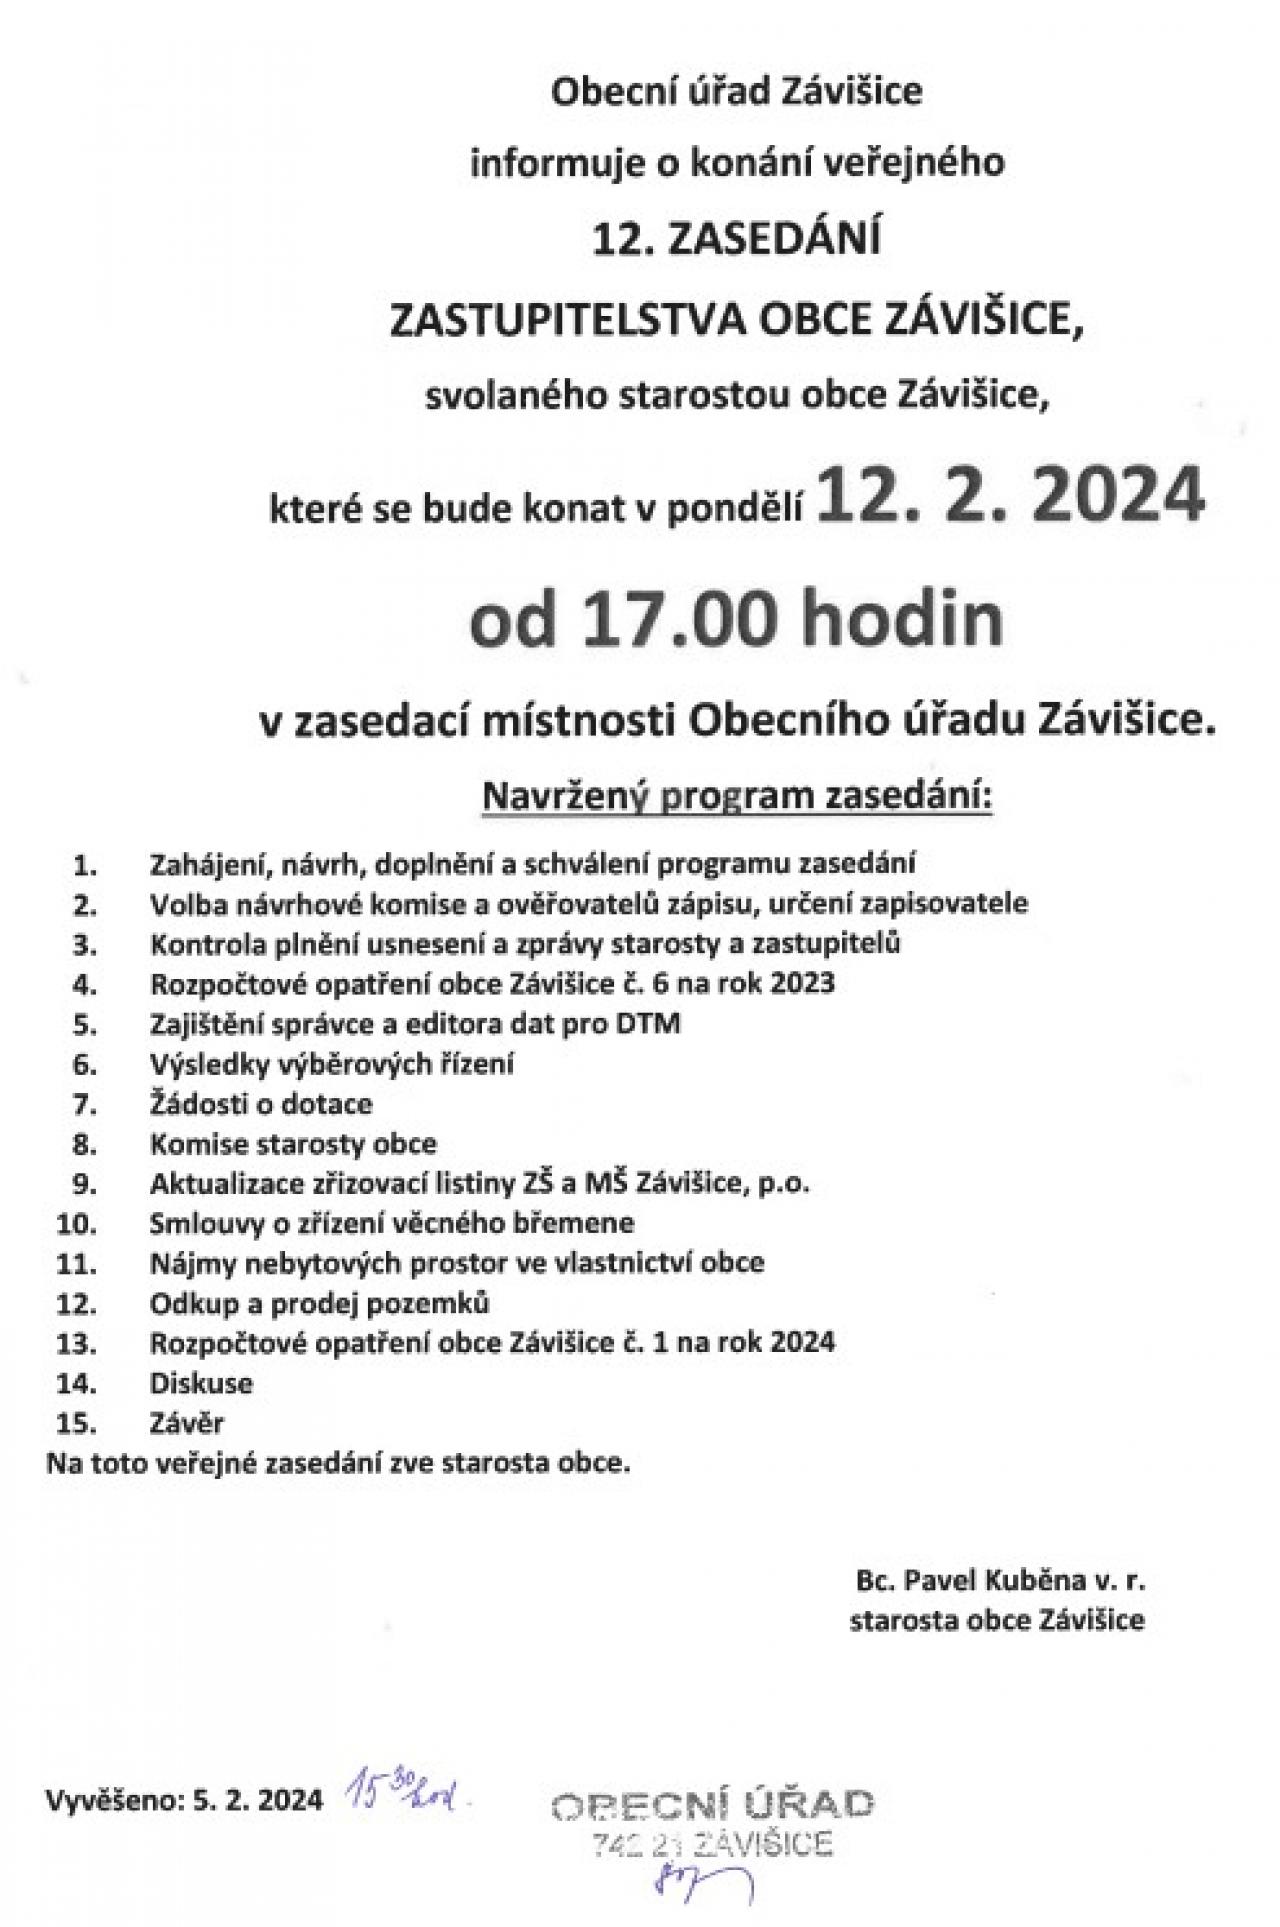 12. Zasedání zastupitelstva obce Závišice 12.2.